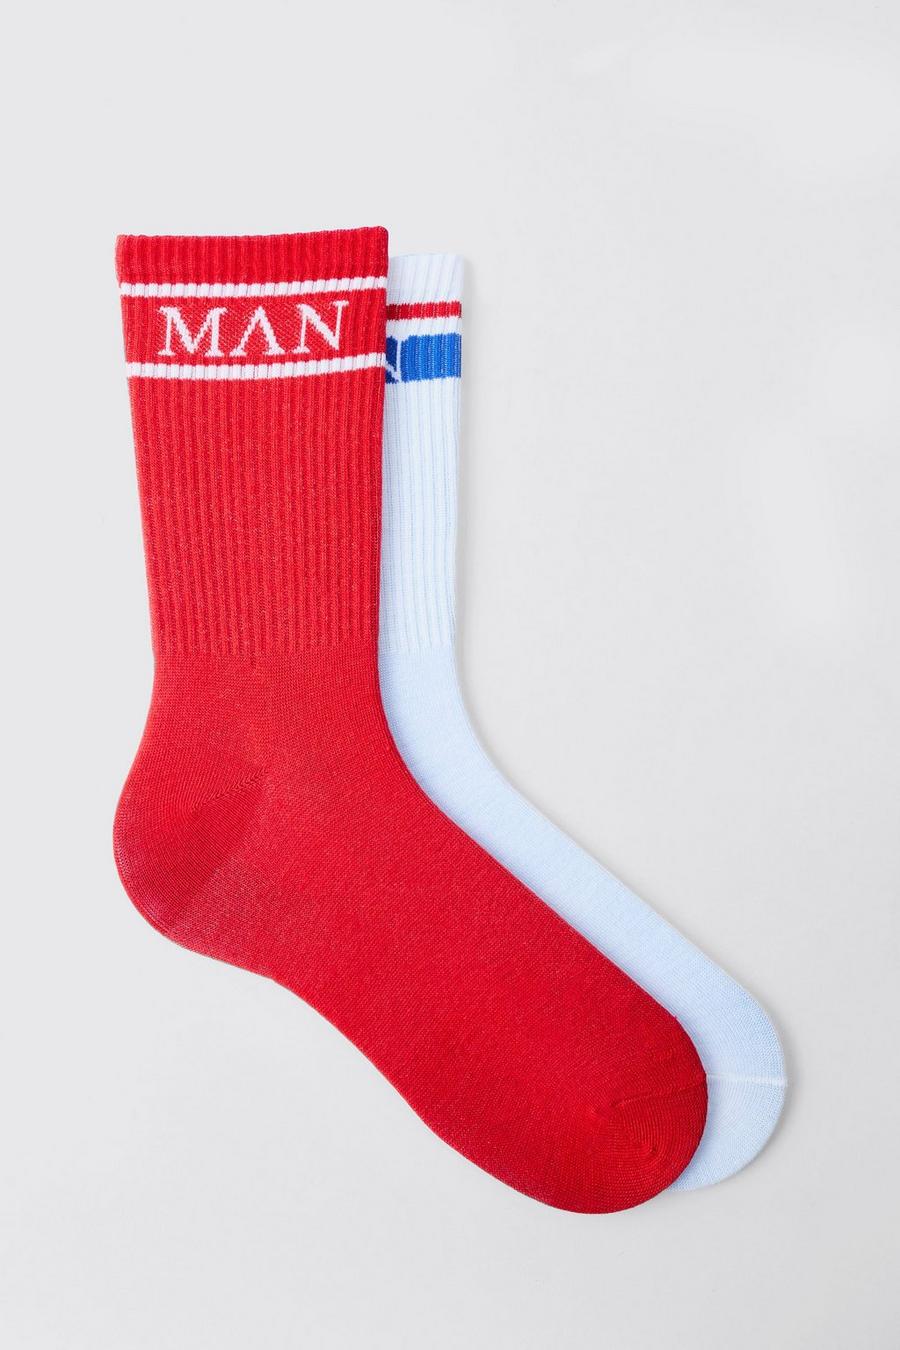 2er-Pack Original Man Sport-Socken, Multi